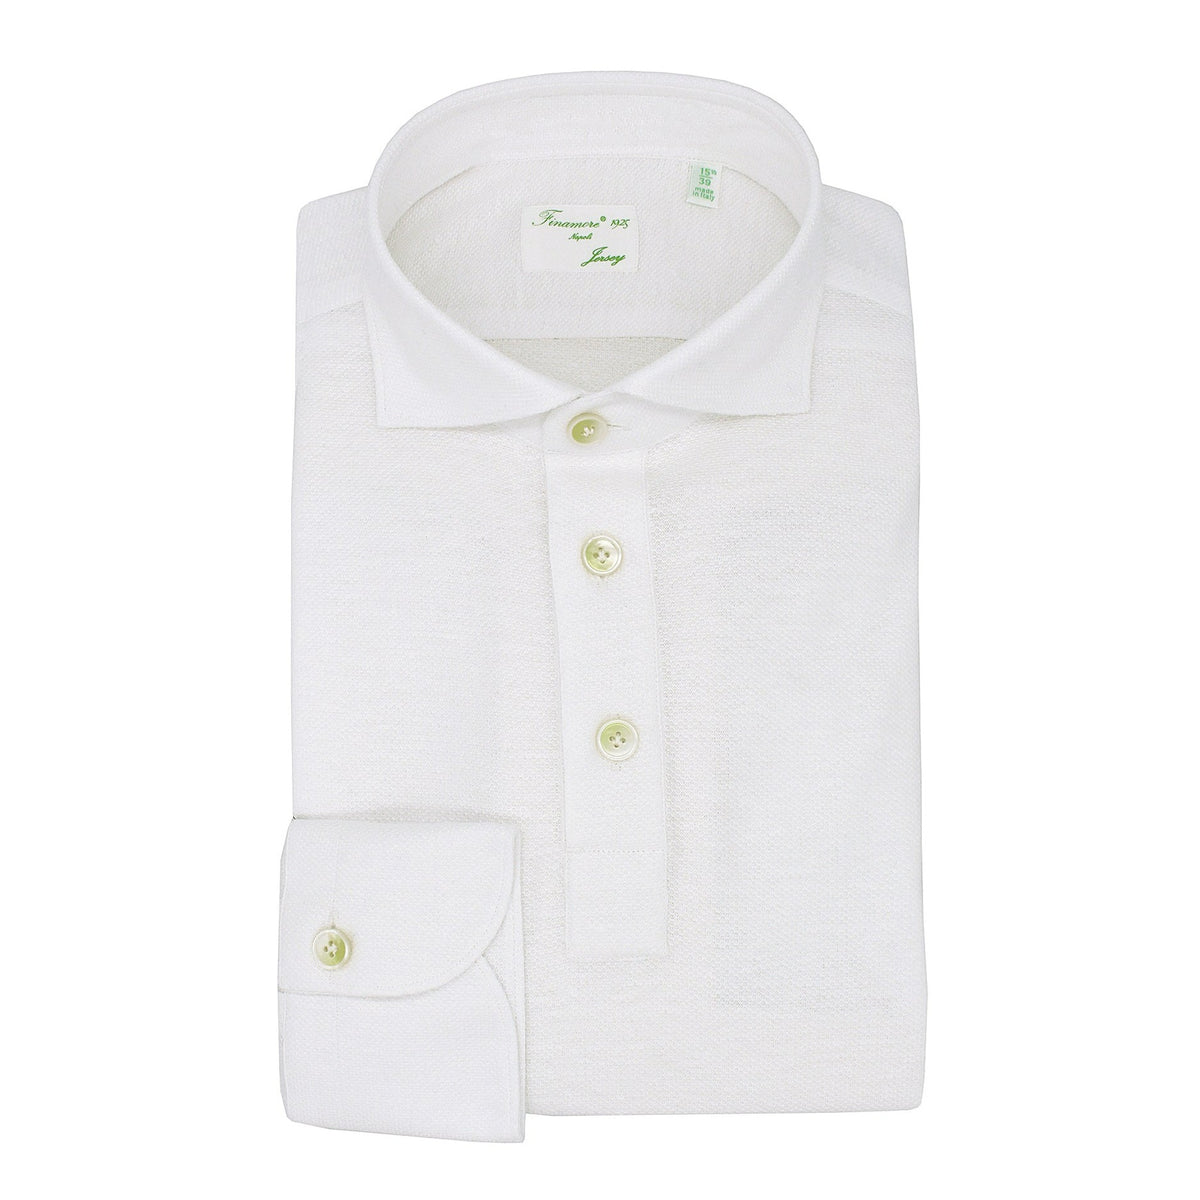 Orlando white polo shirt in cotton and linen